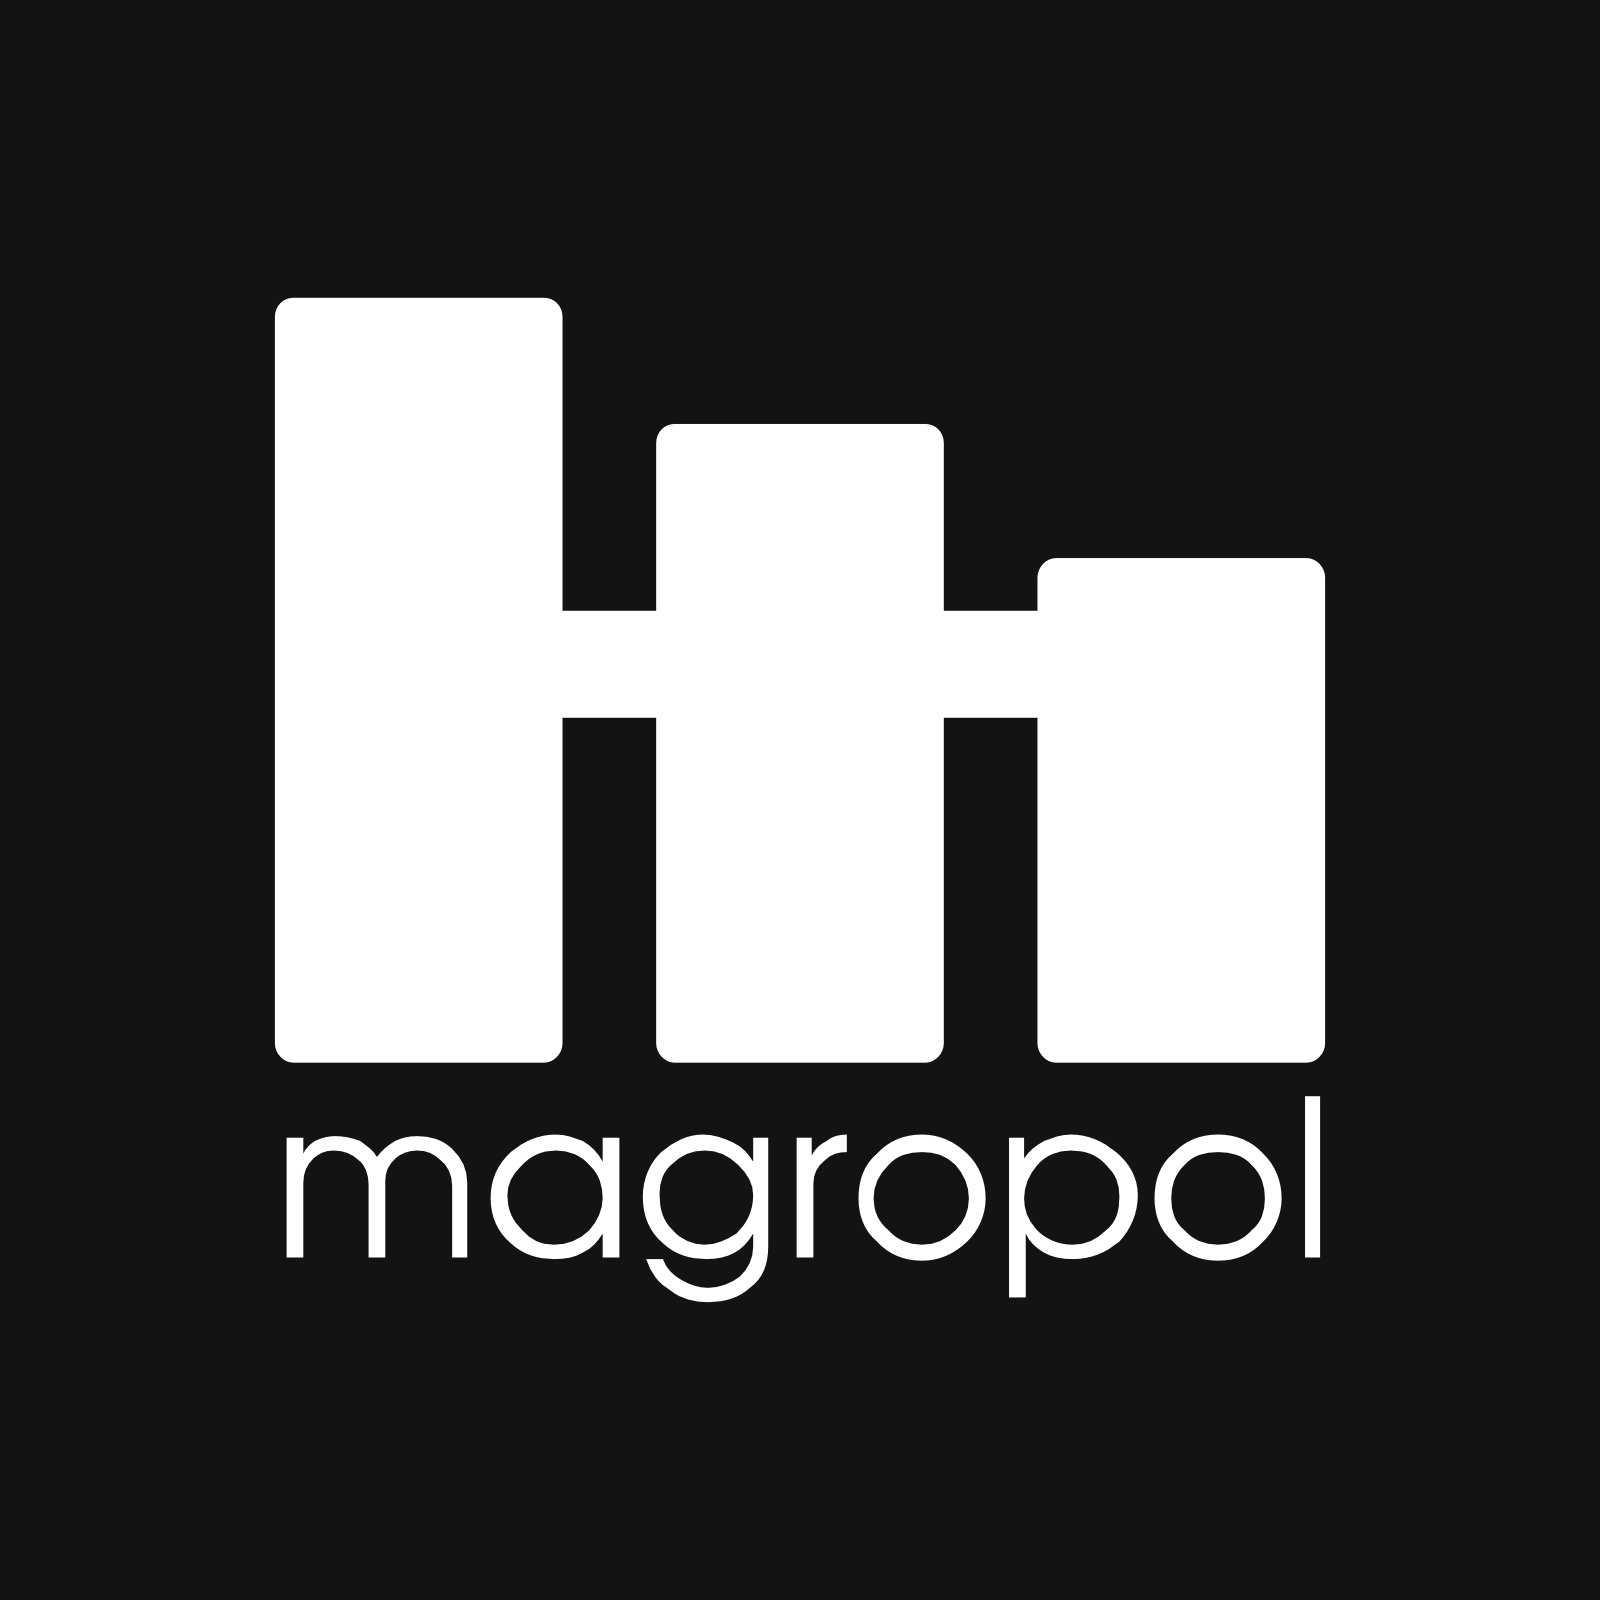 MAGROPOL